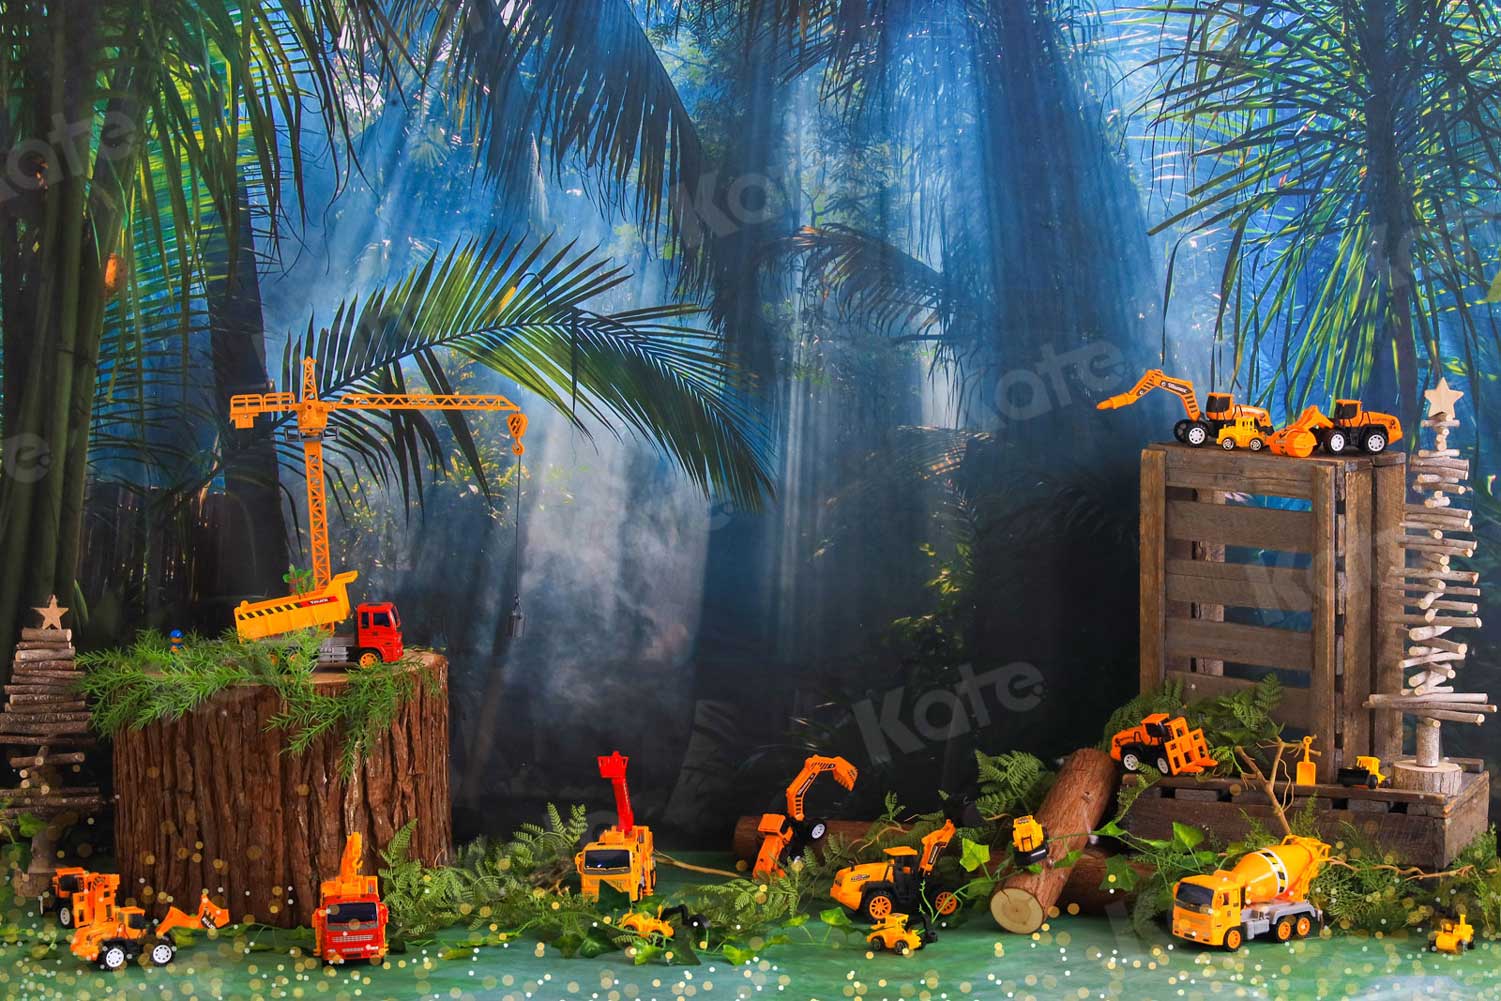 Kate Construction de voiture de jouet de toile de fond de forêt de jungle pour la photographie